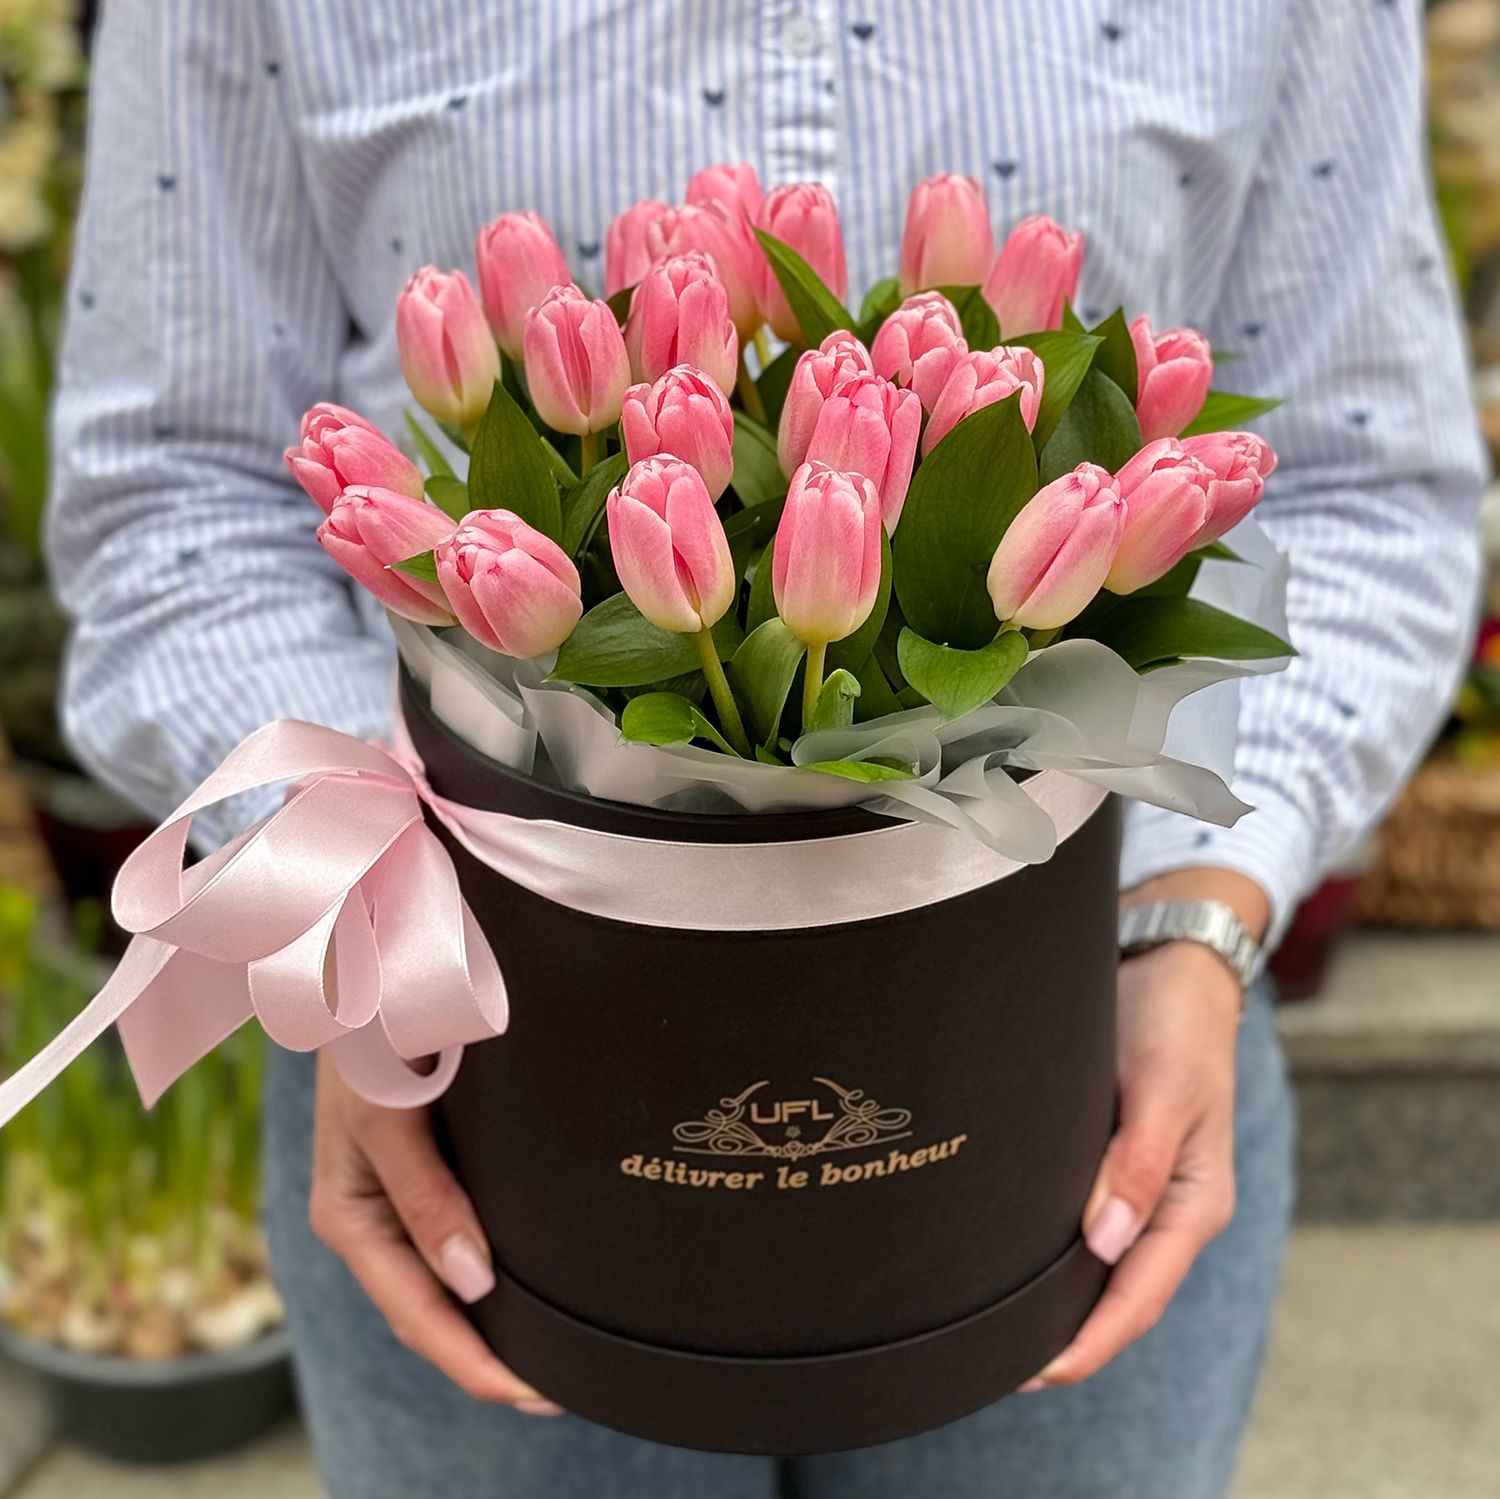 25 розовых тюльпанов в коробке Мапуто